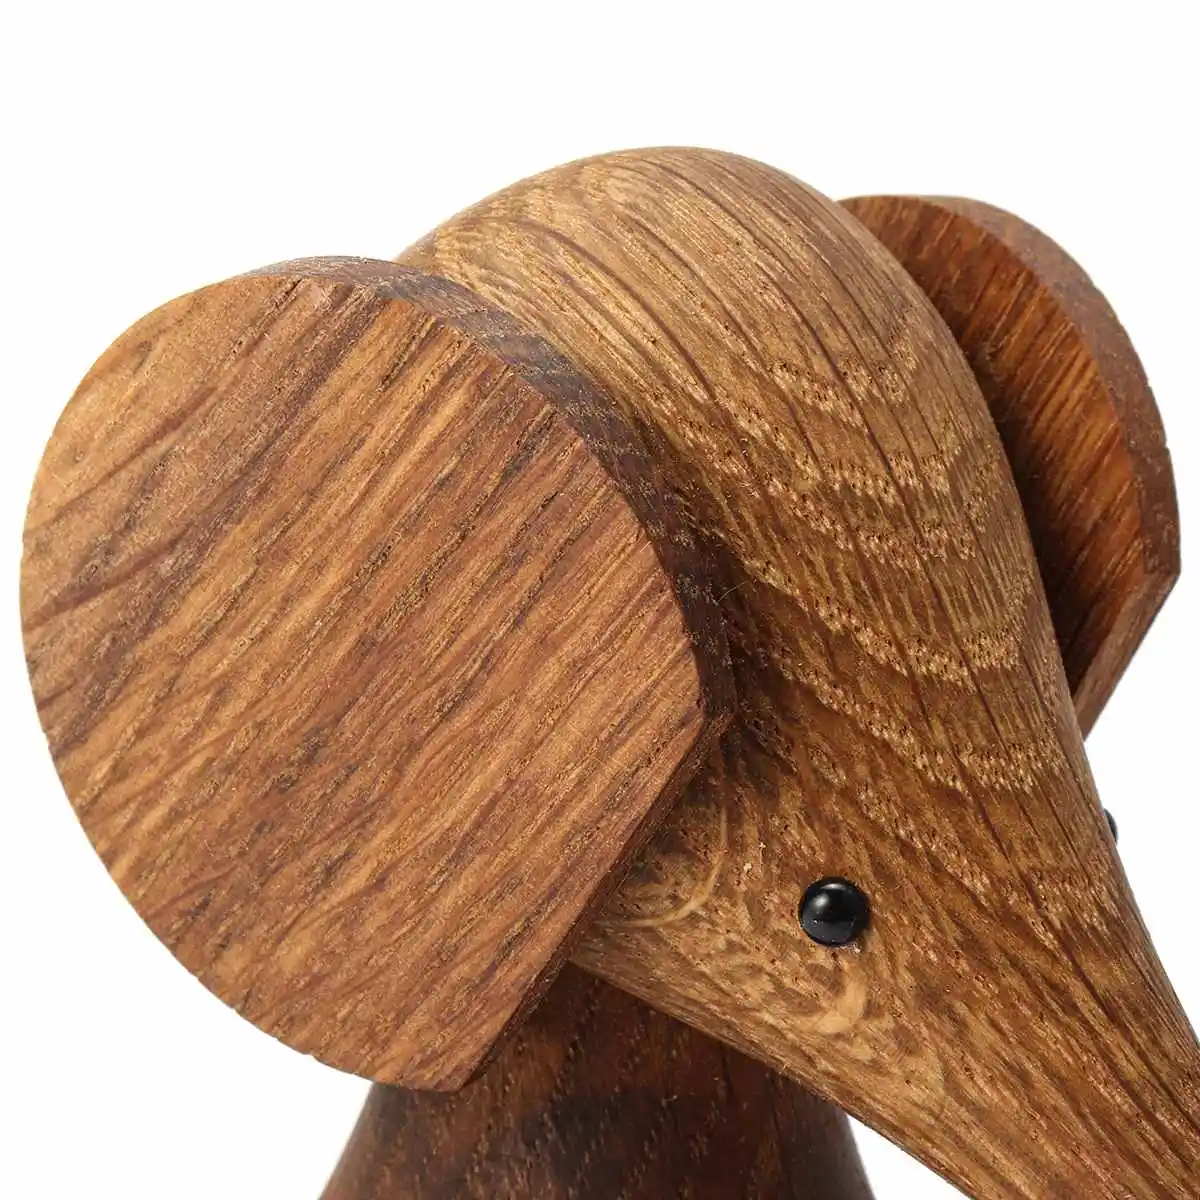 Скандинавские деревянные ремесла дизайн украшения Дерево экспорт хобот слона кукла маленькая деревянная игрушка, подарок